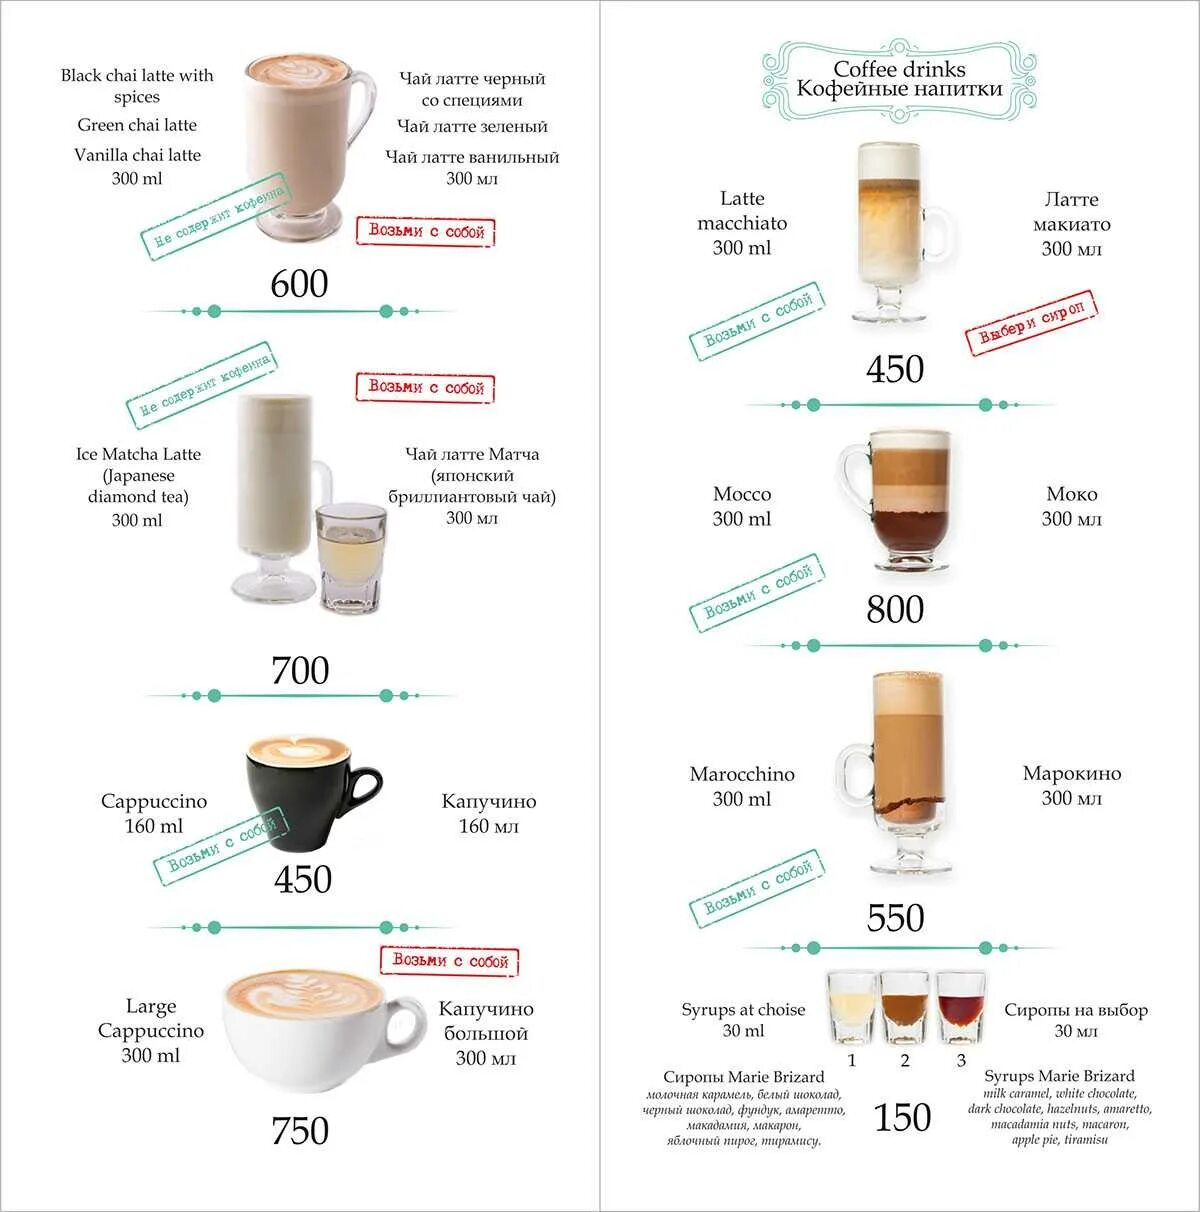 Растворимый кофе с молоком сколько калорий. Капучино без сахара калорийность на 100 мл. Латте калорийность 300 мл с сахаром. Латте 450 мл калорийность. Кофе латте калорийность 300 мл с сахаром.